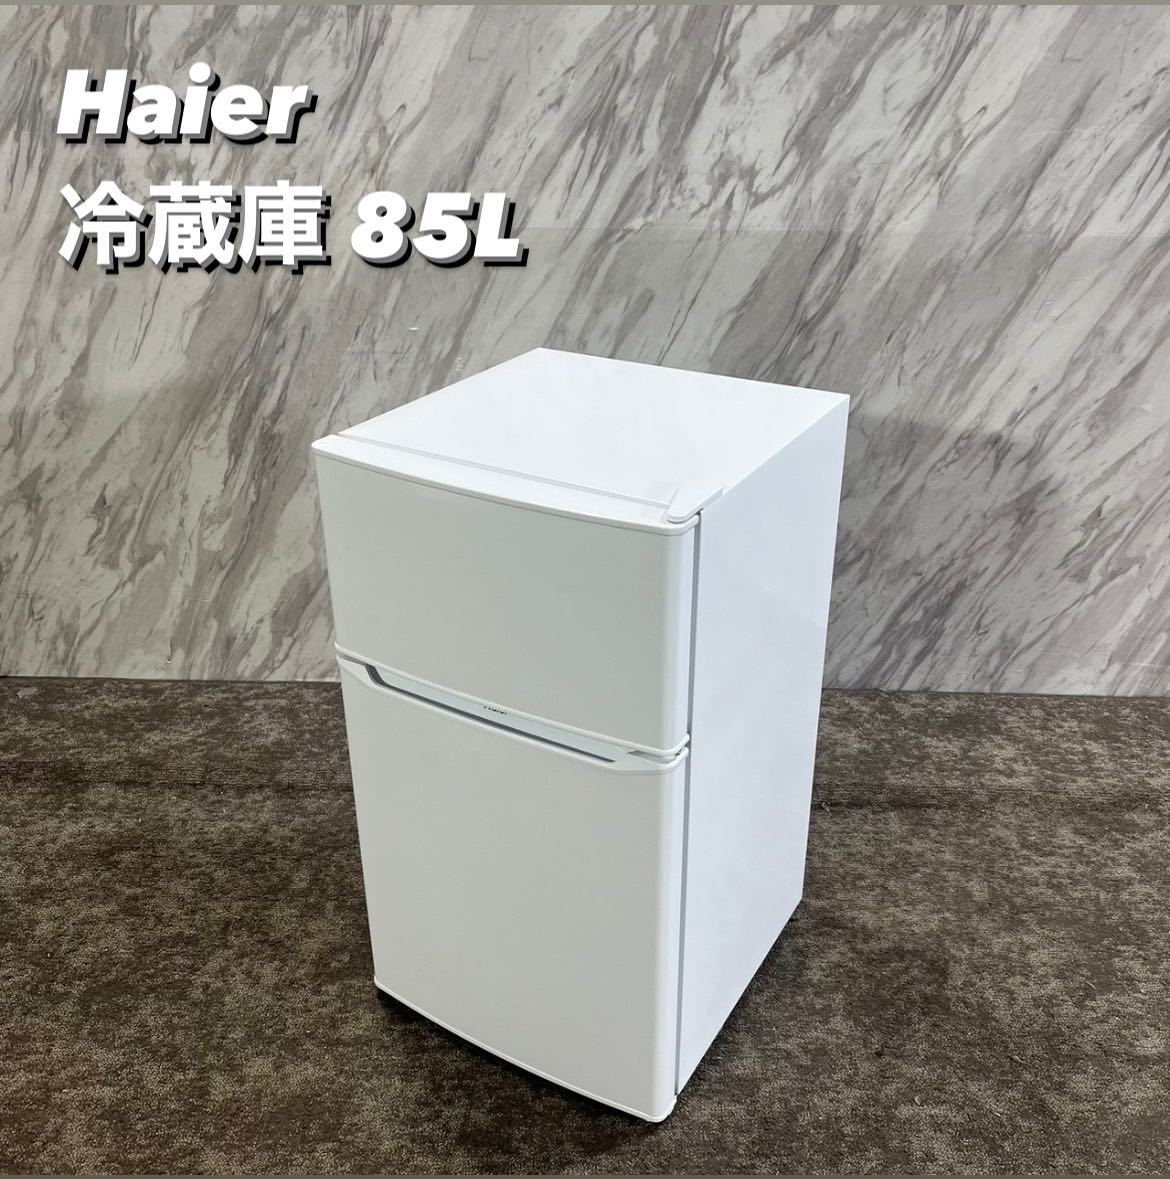 Haier 冷蔵庫 JR-N85C 85L 2019年製 家電 Q483